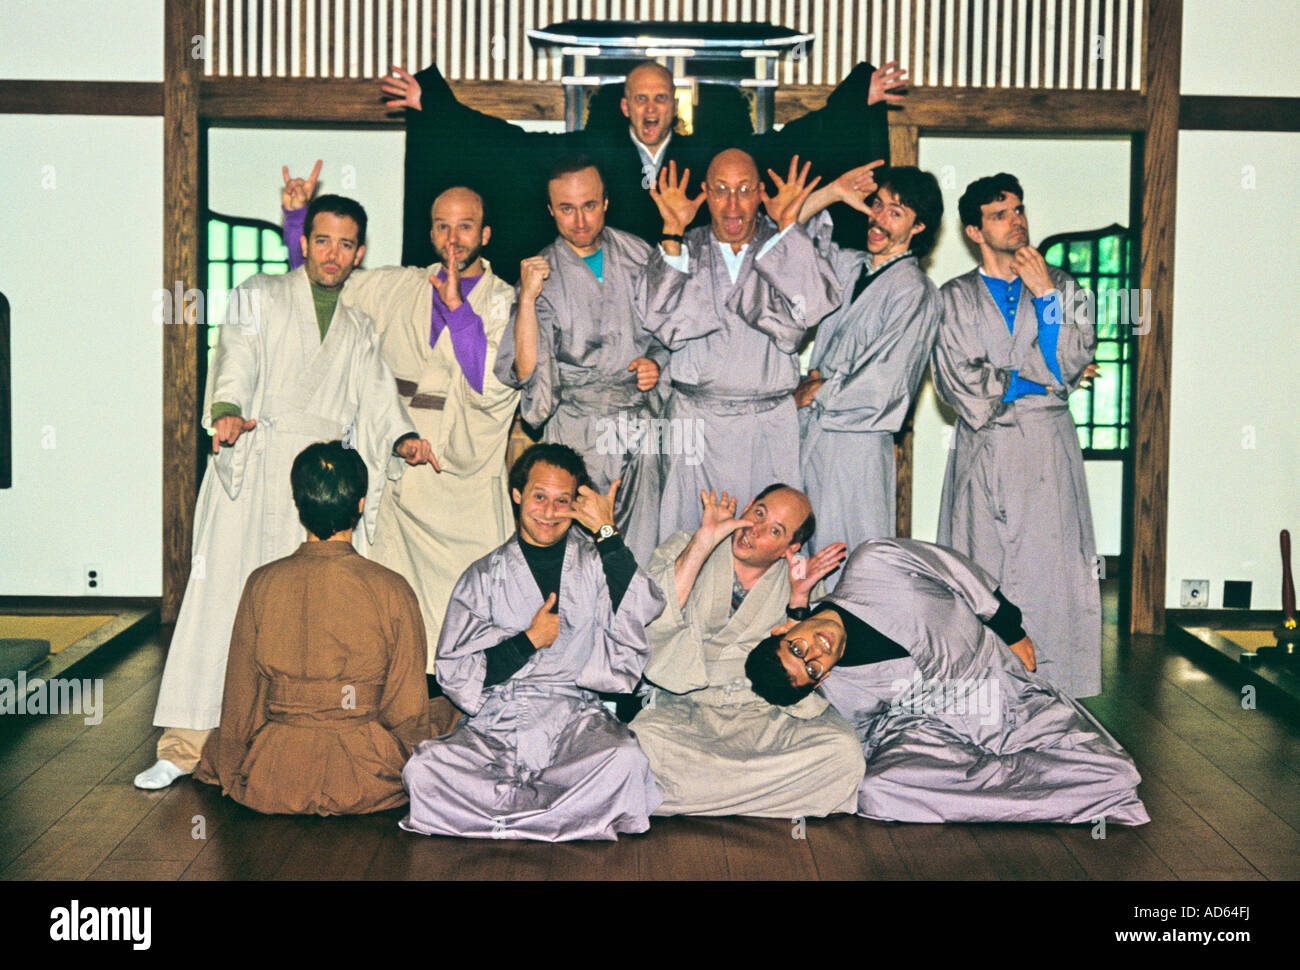 Group of men in robes at Zen monastery acting goofy Stock Photo